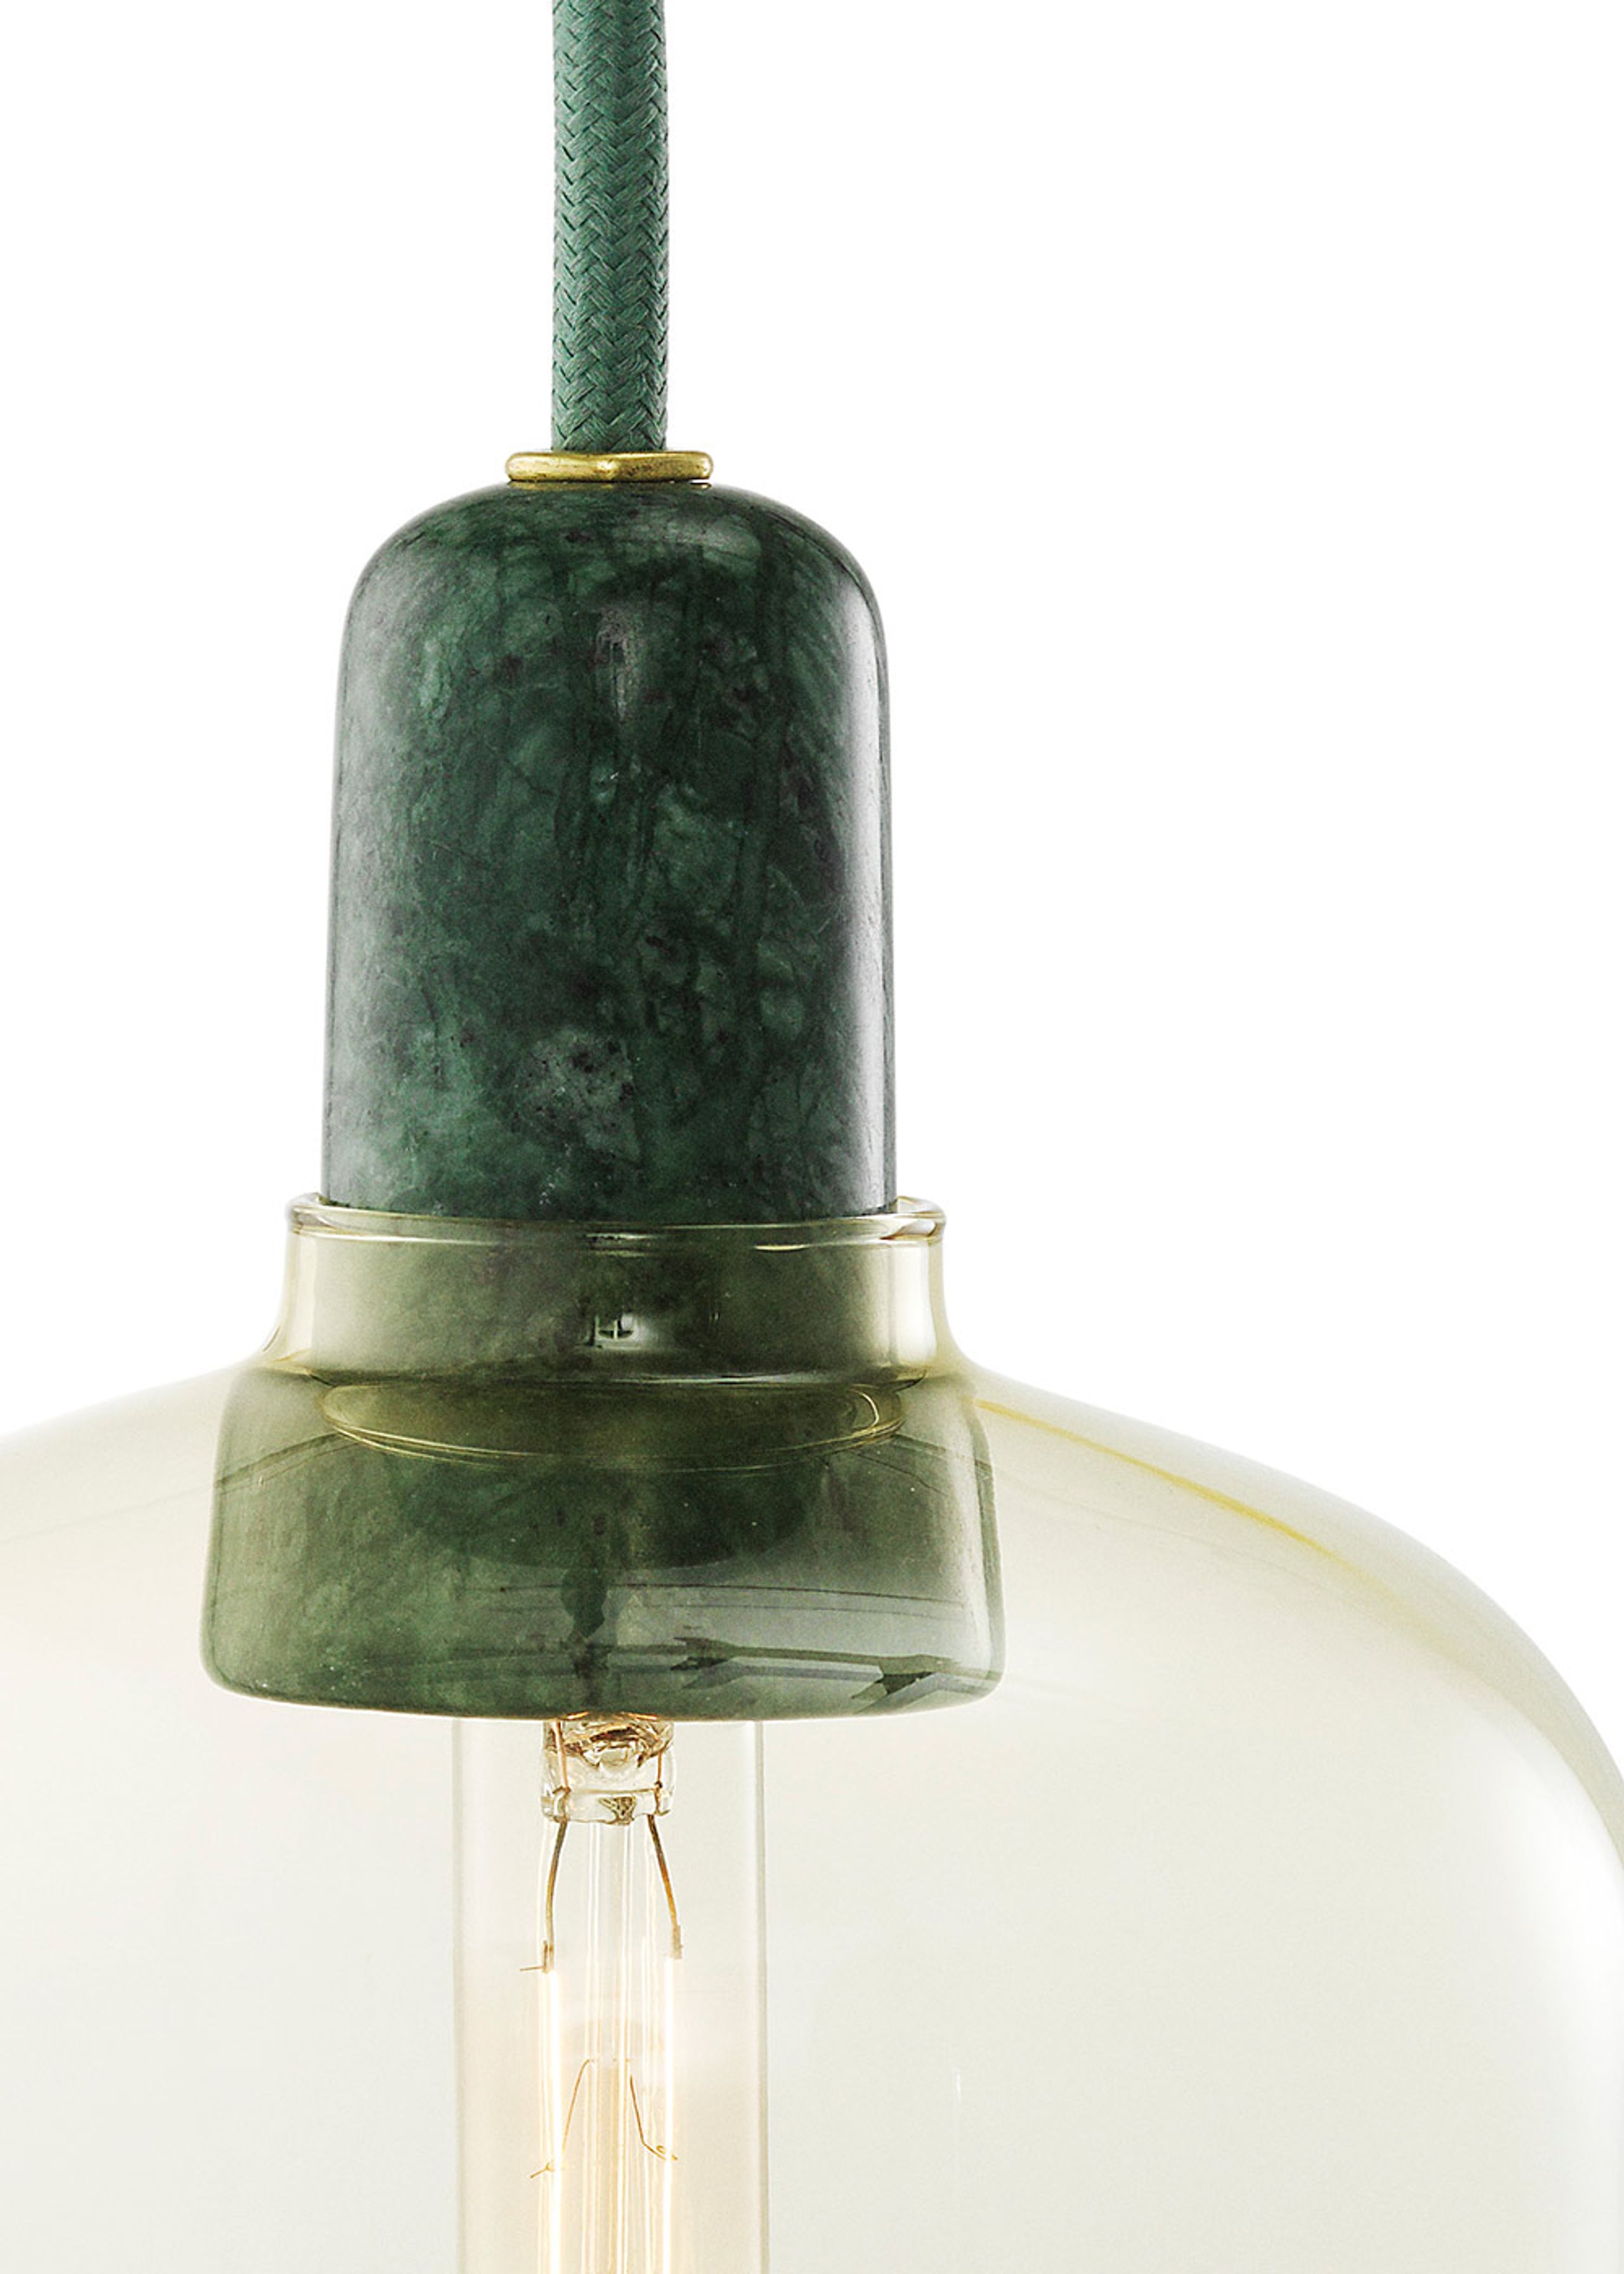 Normann Copenhagen - Lampe - Amp Lamp - Gold / Green - Small